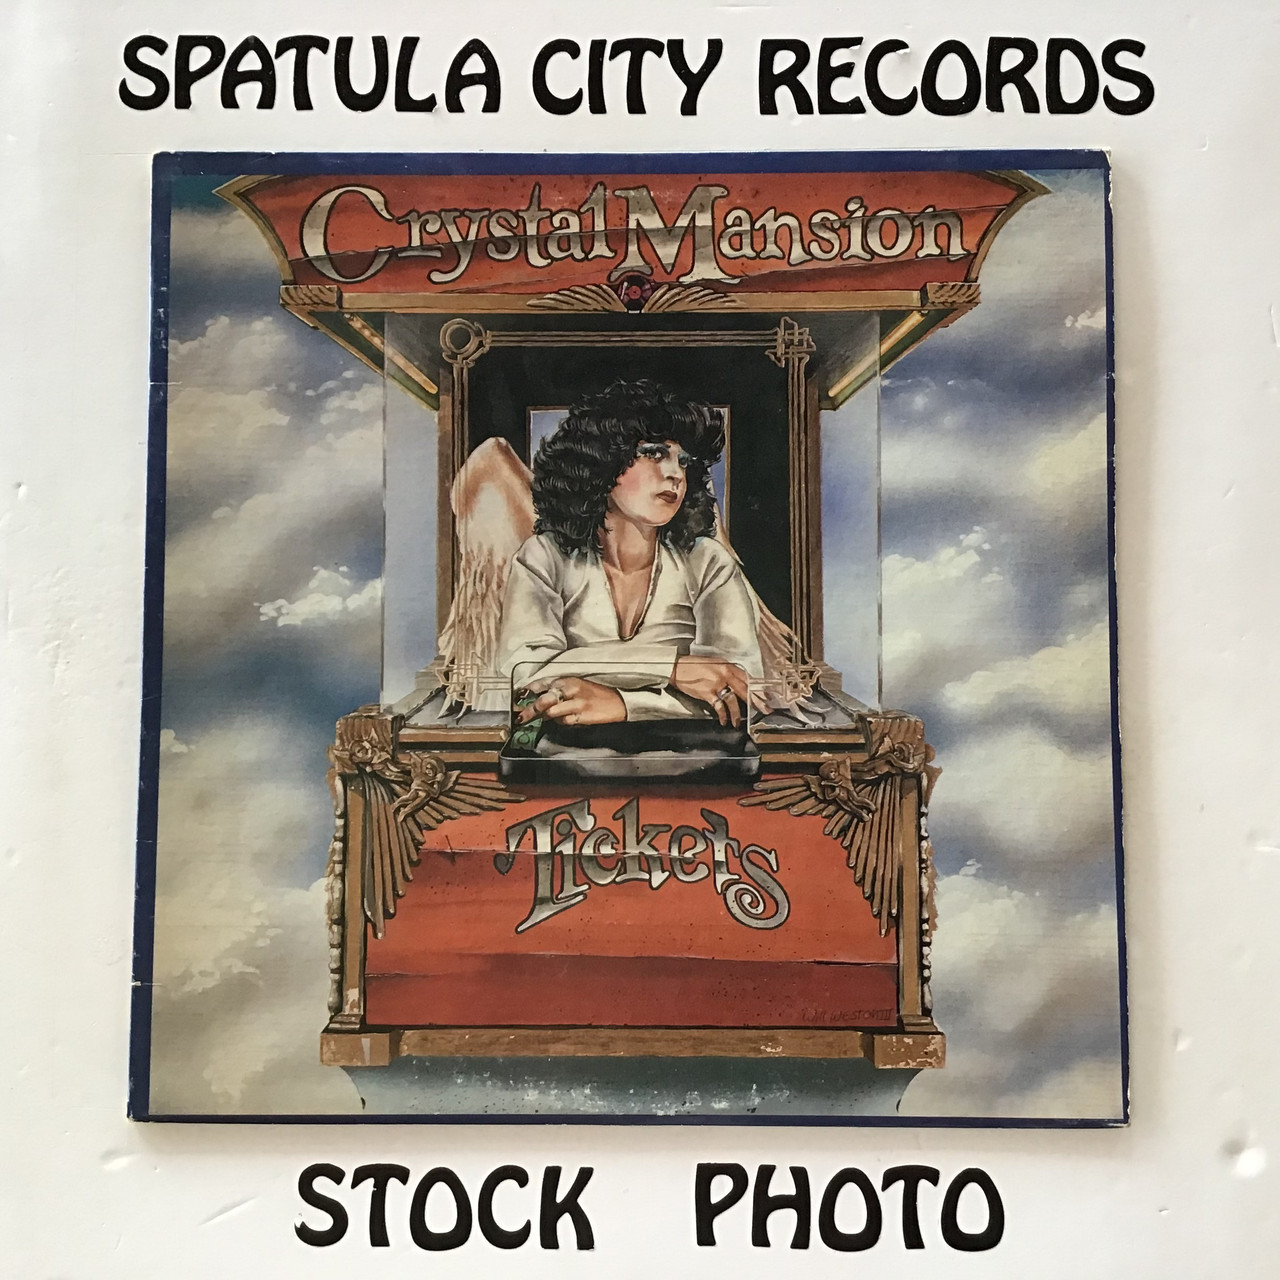 Crystal Mansion - Tickets - vinyl record album LP